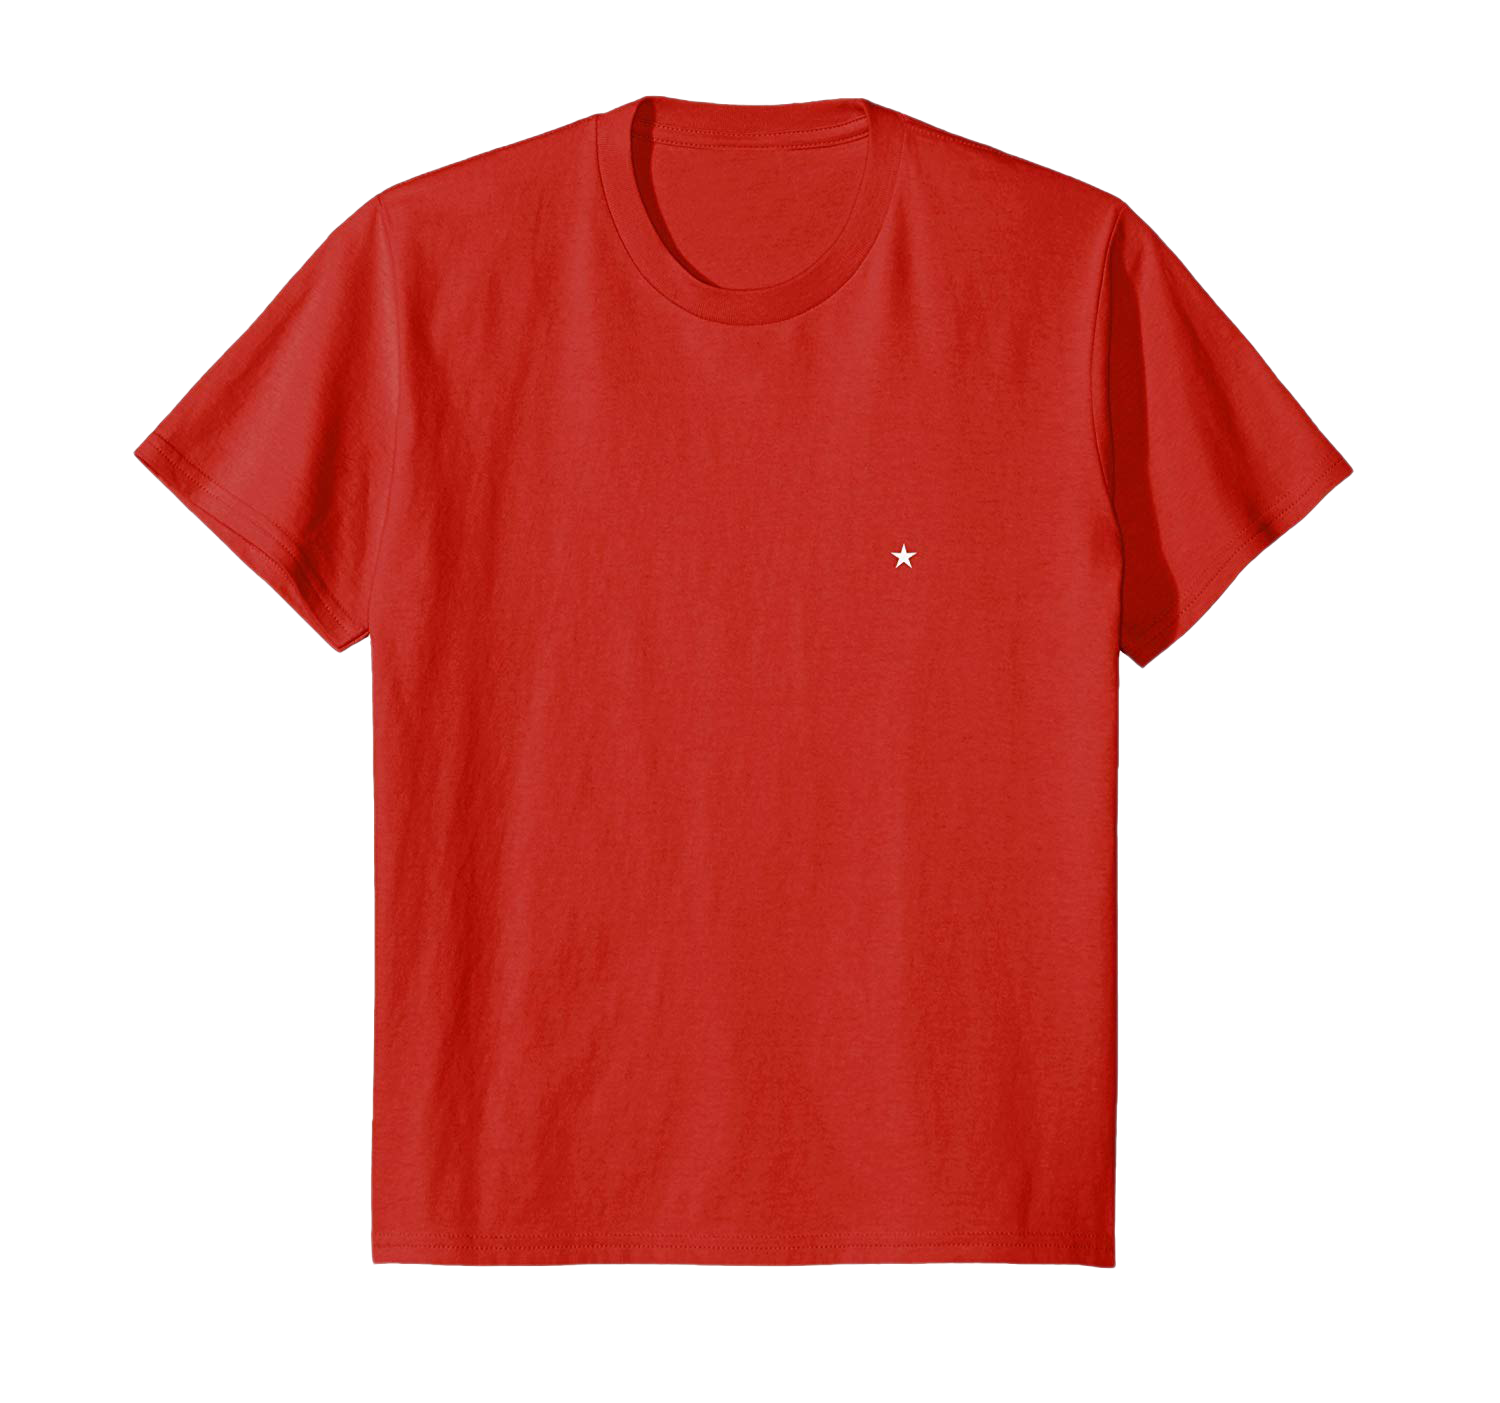 T-shirt vermelho simples imagem de alta qualidade PNG